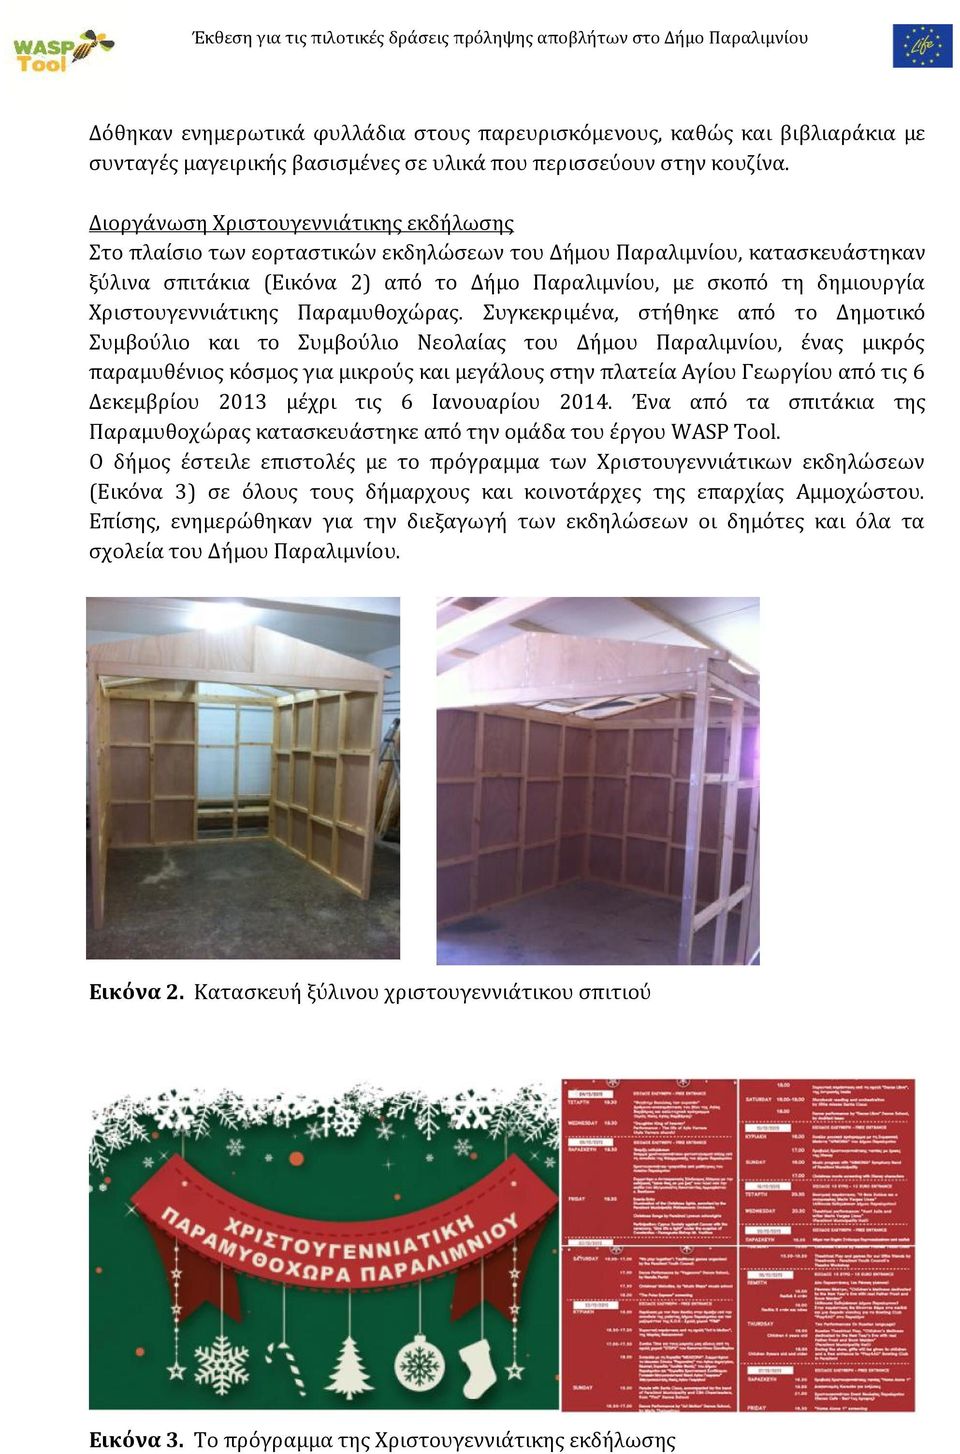 Διοργάνωση Χριστουγεννιάτικης εκδήλωσης Στο πλαίσιο των εορταστικών εκδηλώσεων του Δήμου Παραλιμνίου, κατασκευάστηκαν ξύλινα σπιτάκια (Εικόνα 2) από το Δήμο Παραλιμνίου, με σκοπό τη δημιουργία